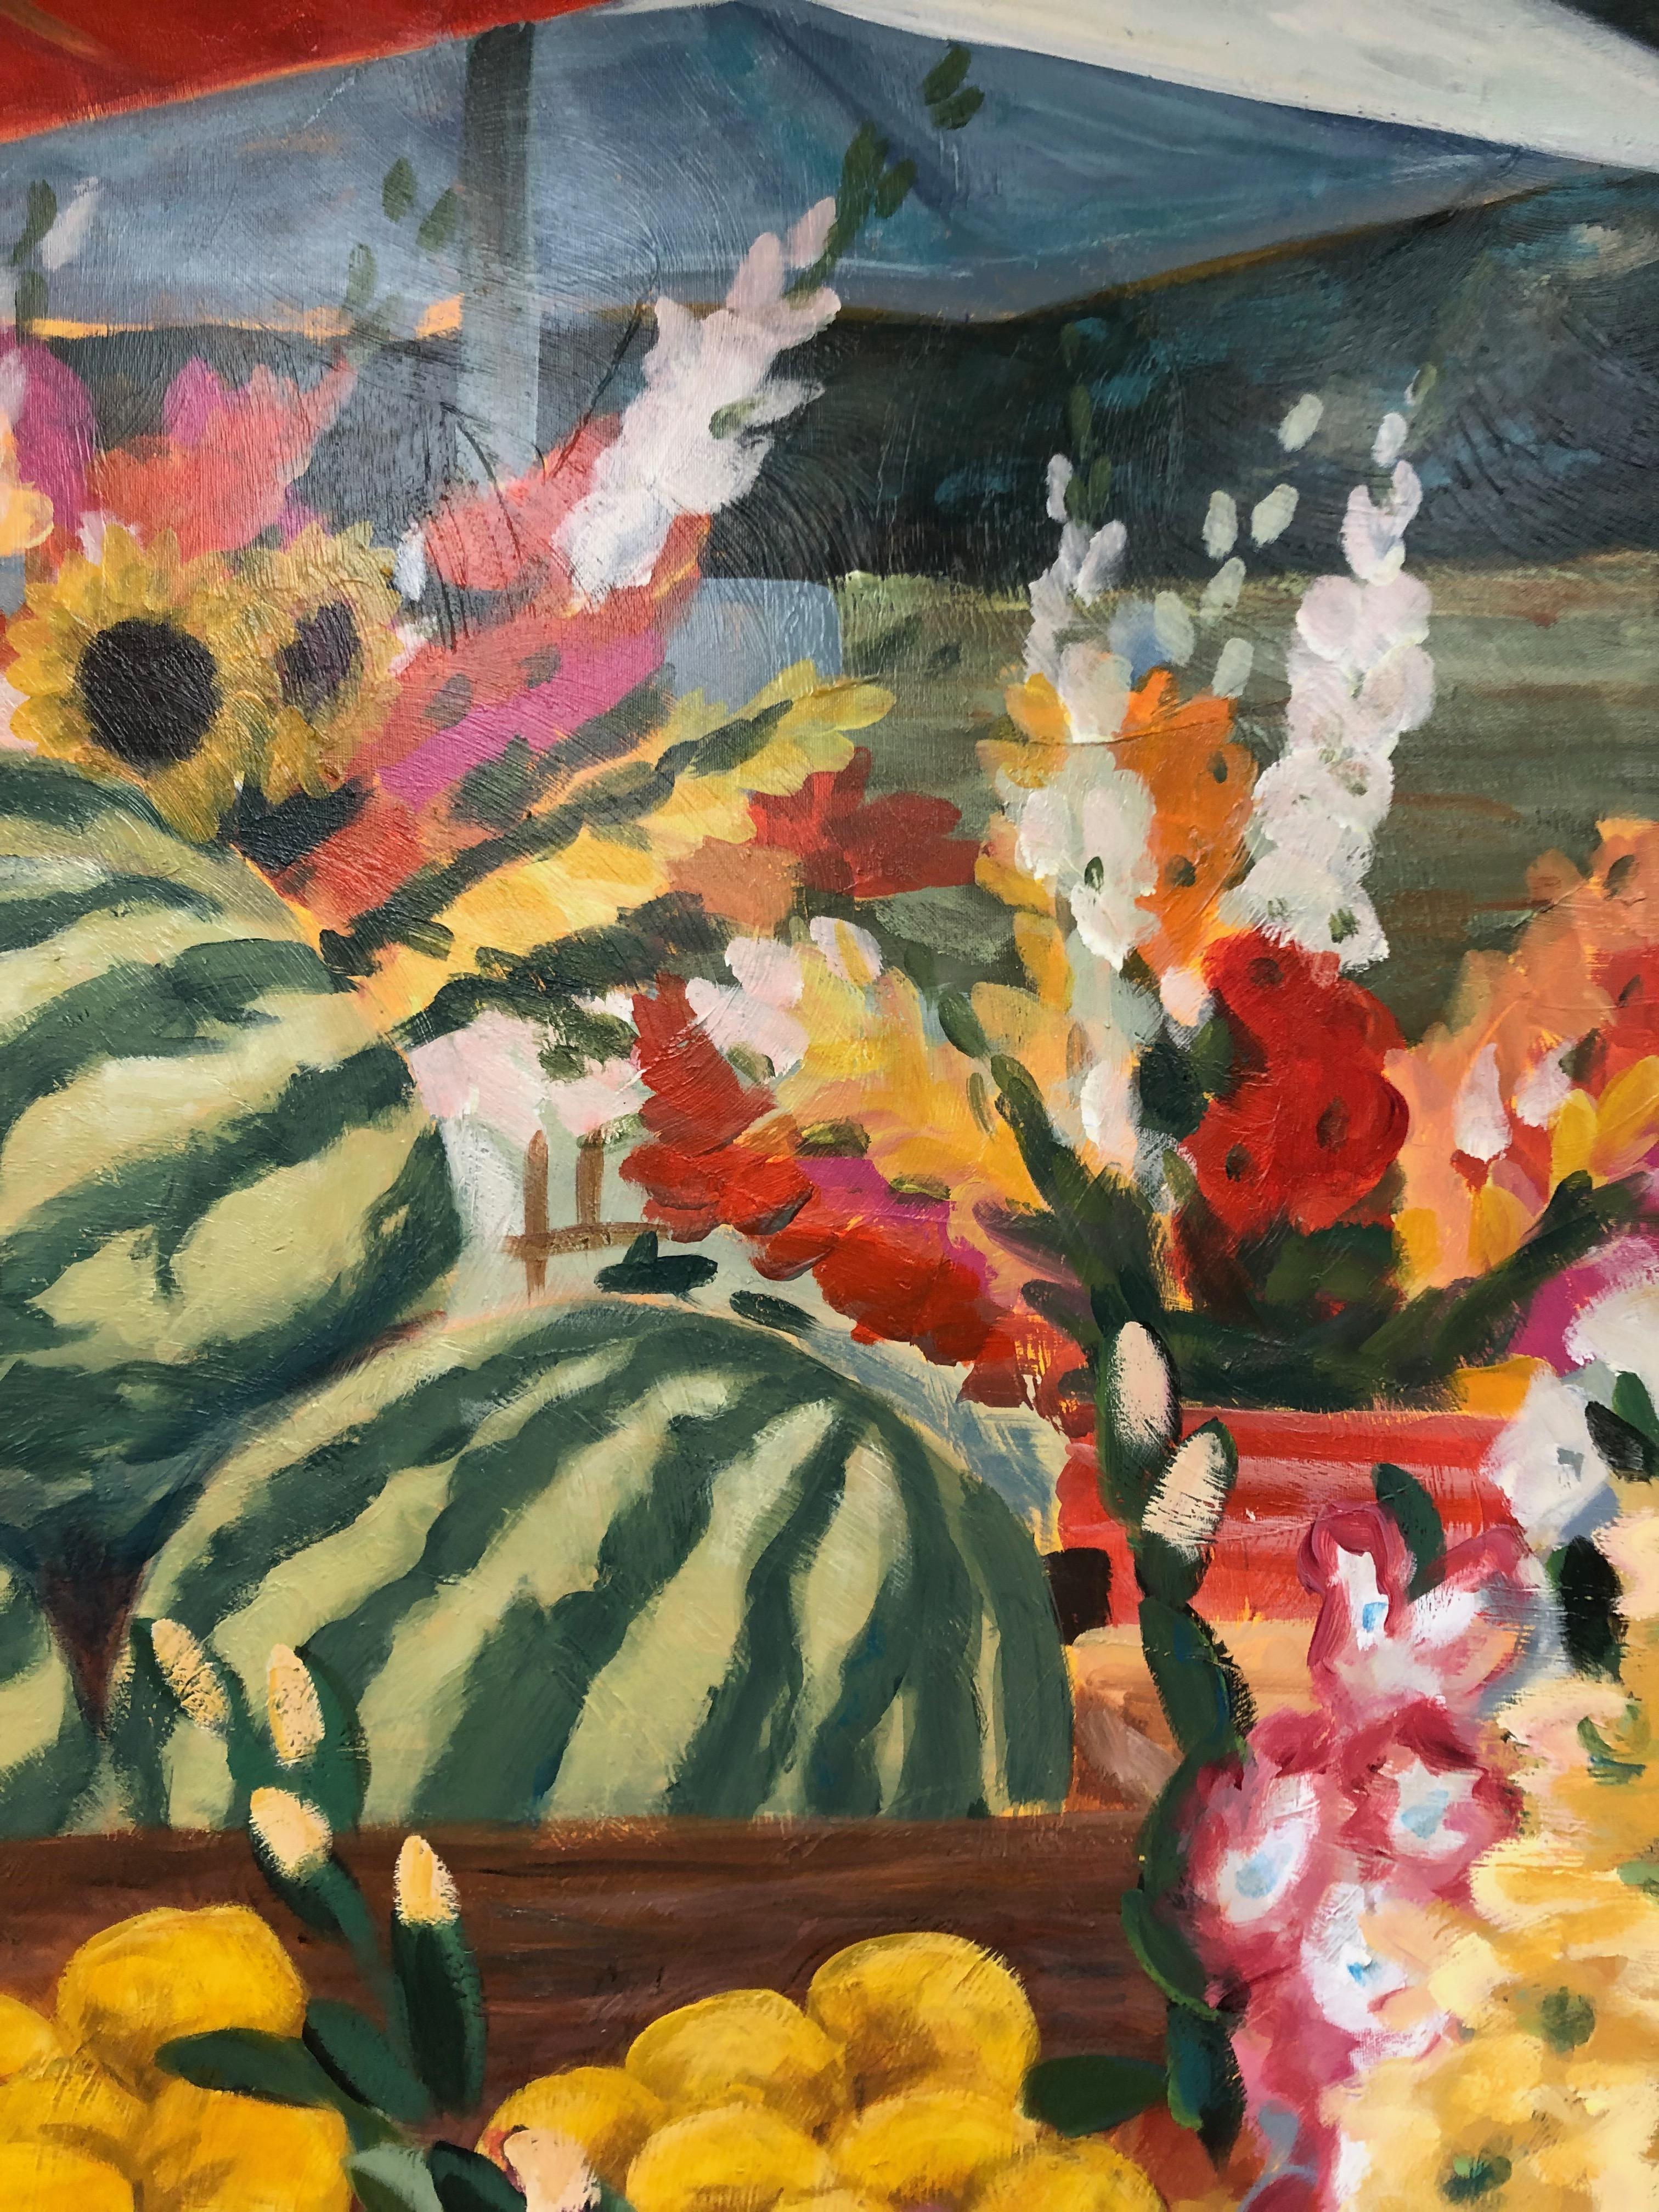 Obstmarkt Großes Stilleben Gemälde
Künstler signiert unten rechts.
Carol Korpi McKinley ist eine international anerkannte amerikanische Künstlerin, die vor allem für ihre großformatigen Darstellungen von Obst, Gemüse und Tieren sowie für ihre